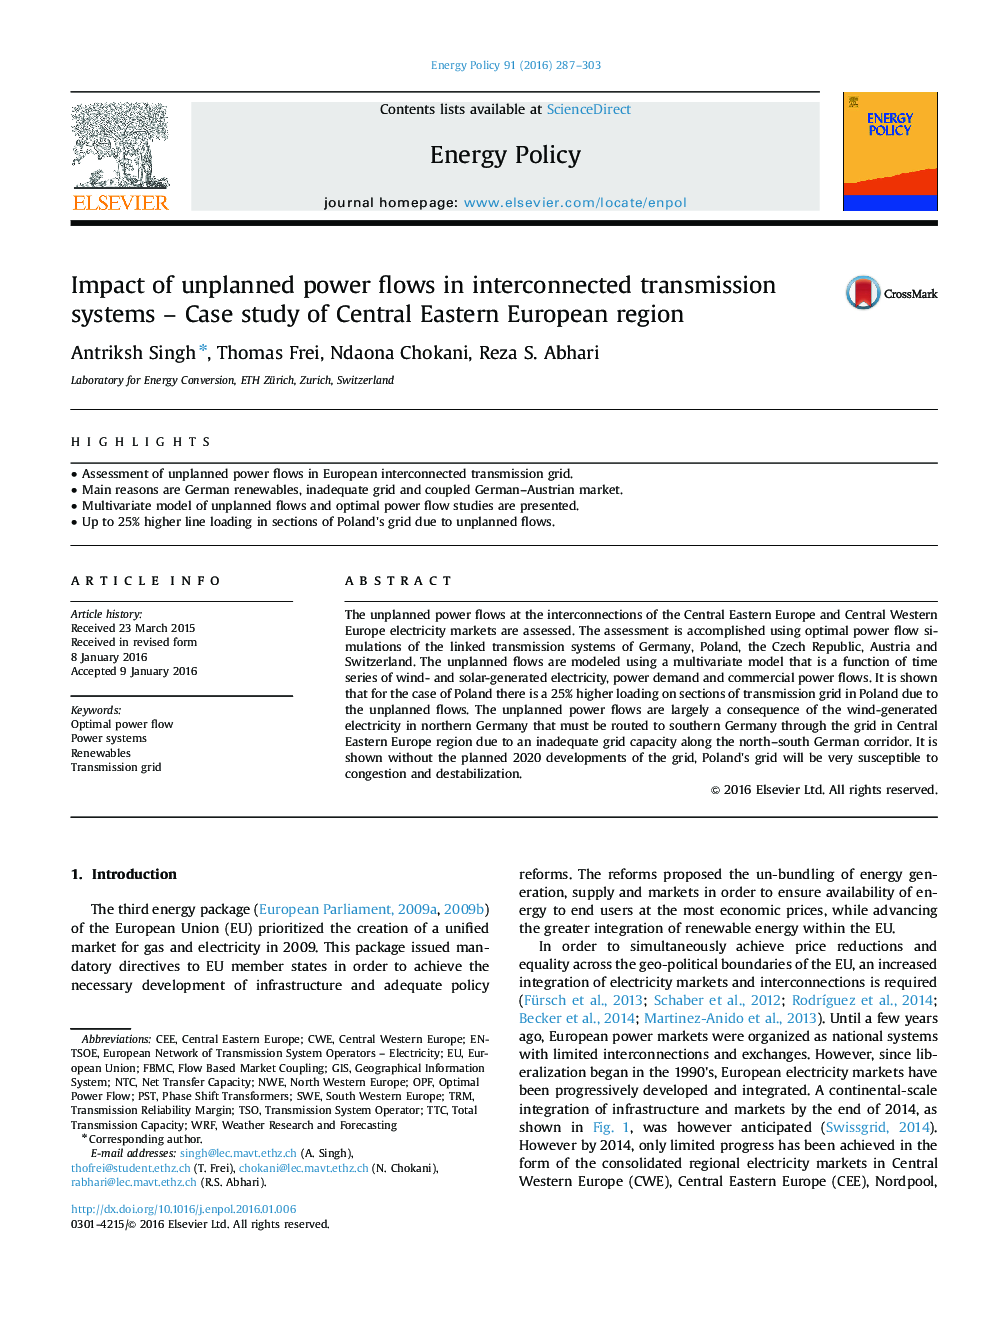 تأثیر جریانهای غیرمتمرکز در سیستمهای انتقال متصل شده - مطالعه موردی منطقه اروپای شرقی 